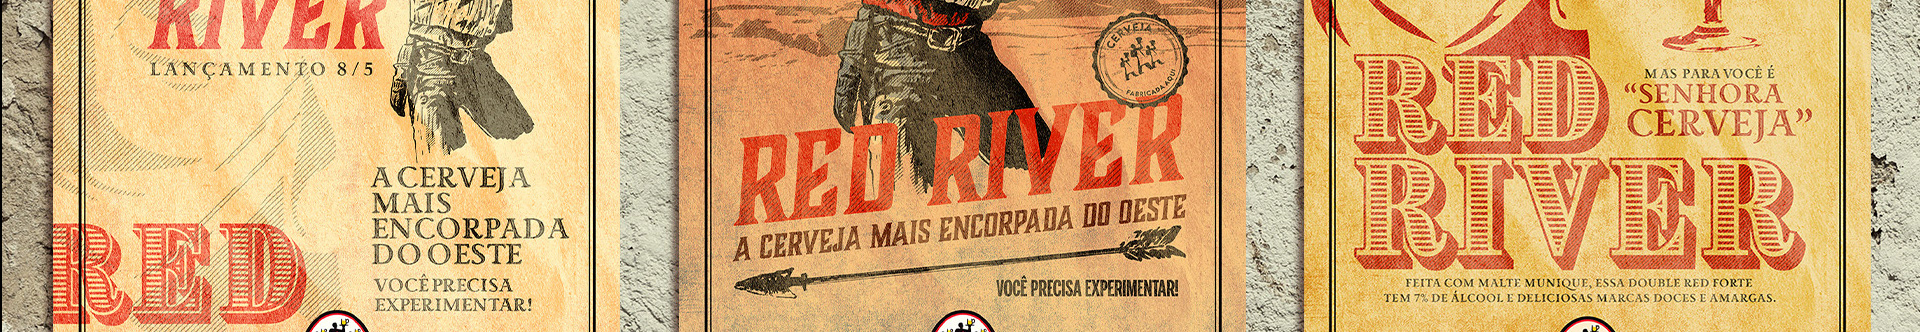 Paulo Teixeira's profile banner